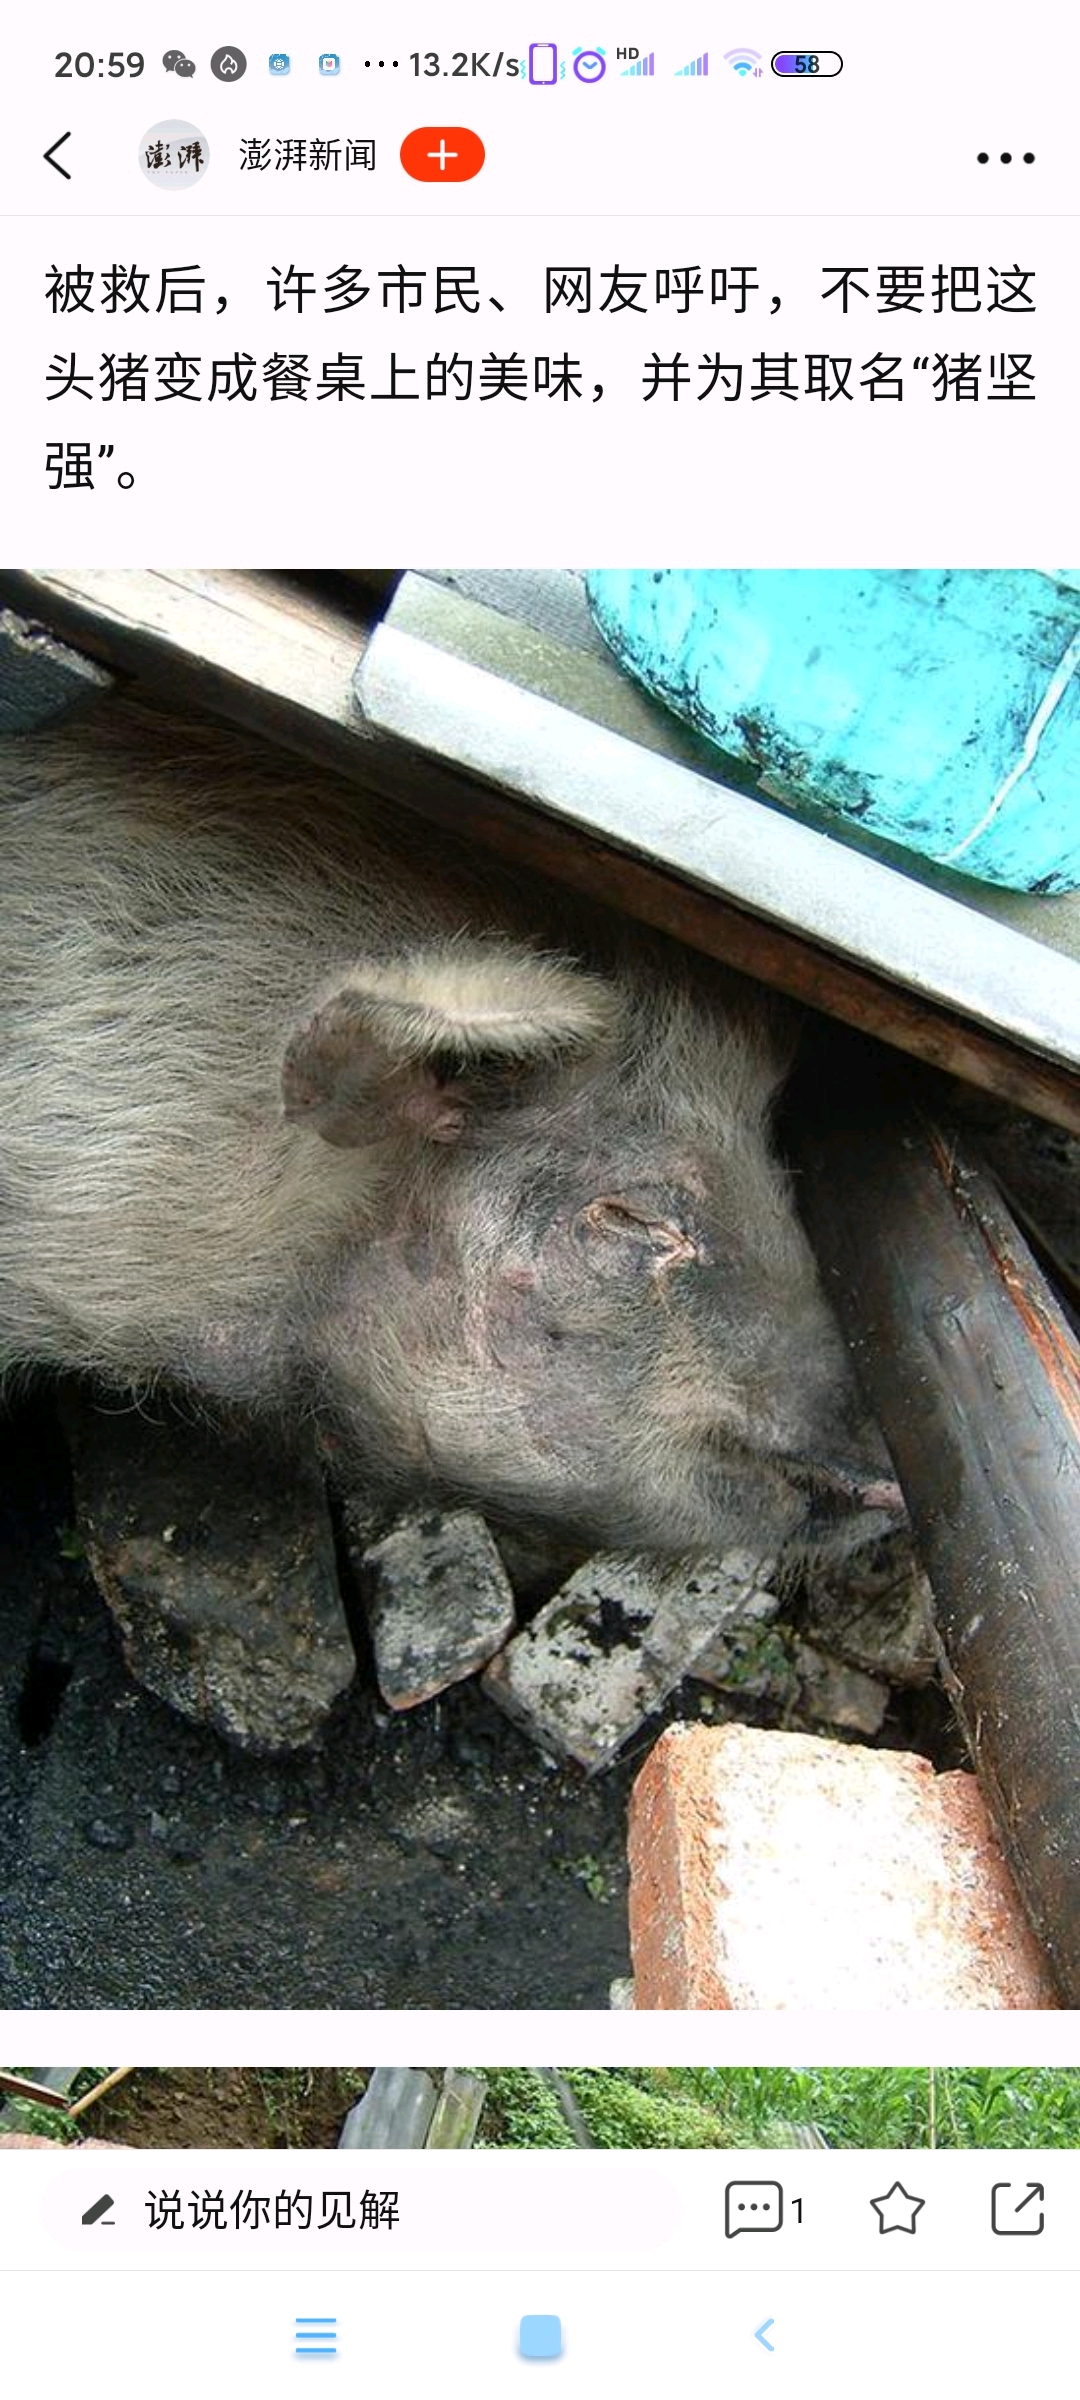 猪坚强汶川地震图片